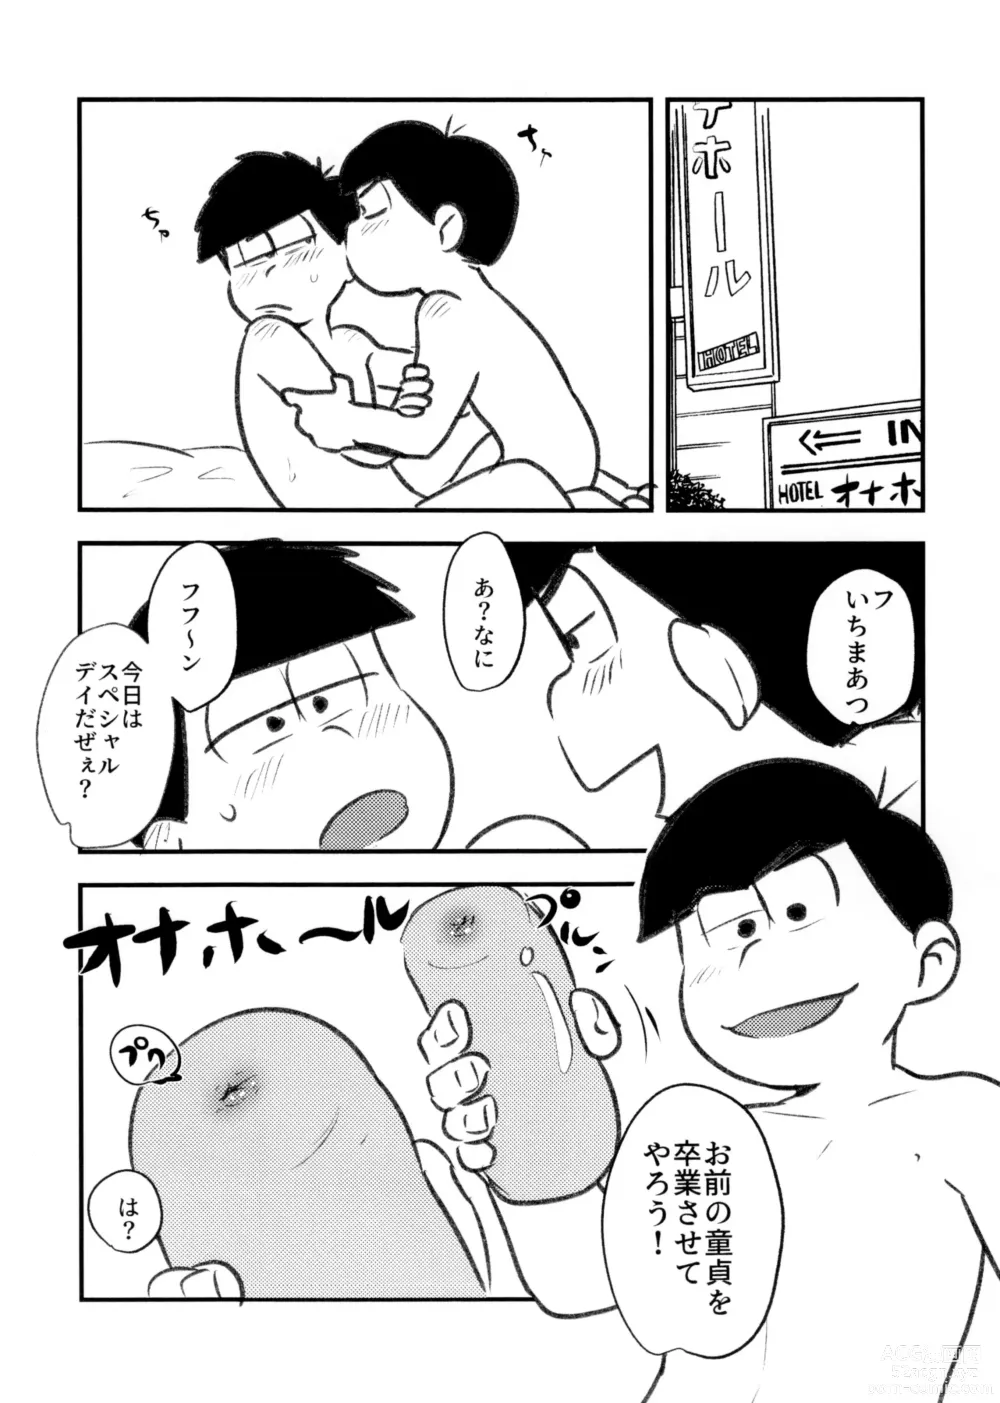 Page 4 of doujinshi Guchuguchu Nuchinuchu Mahou no Doppyun Onaho de Sotsugyou